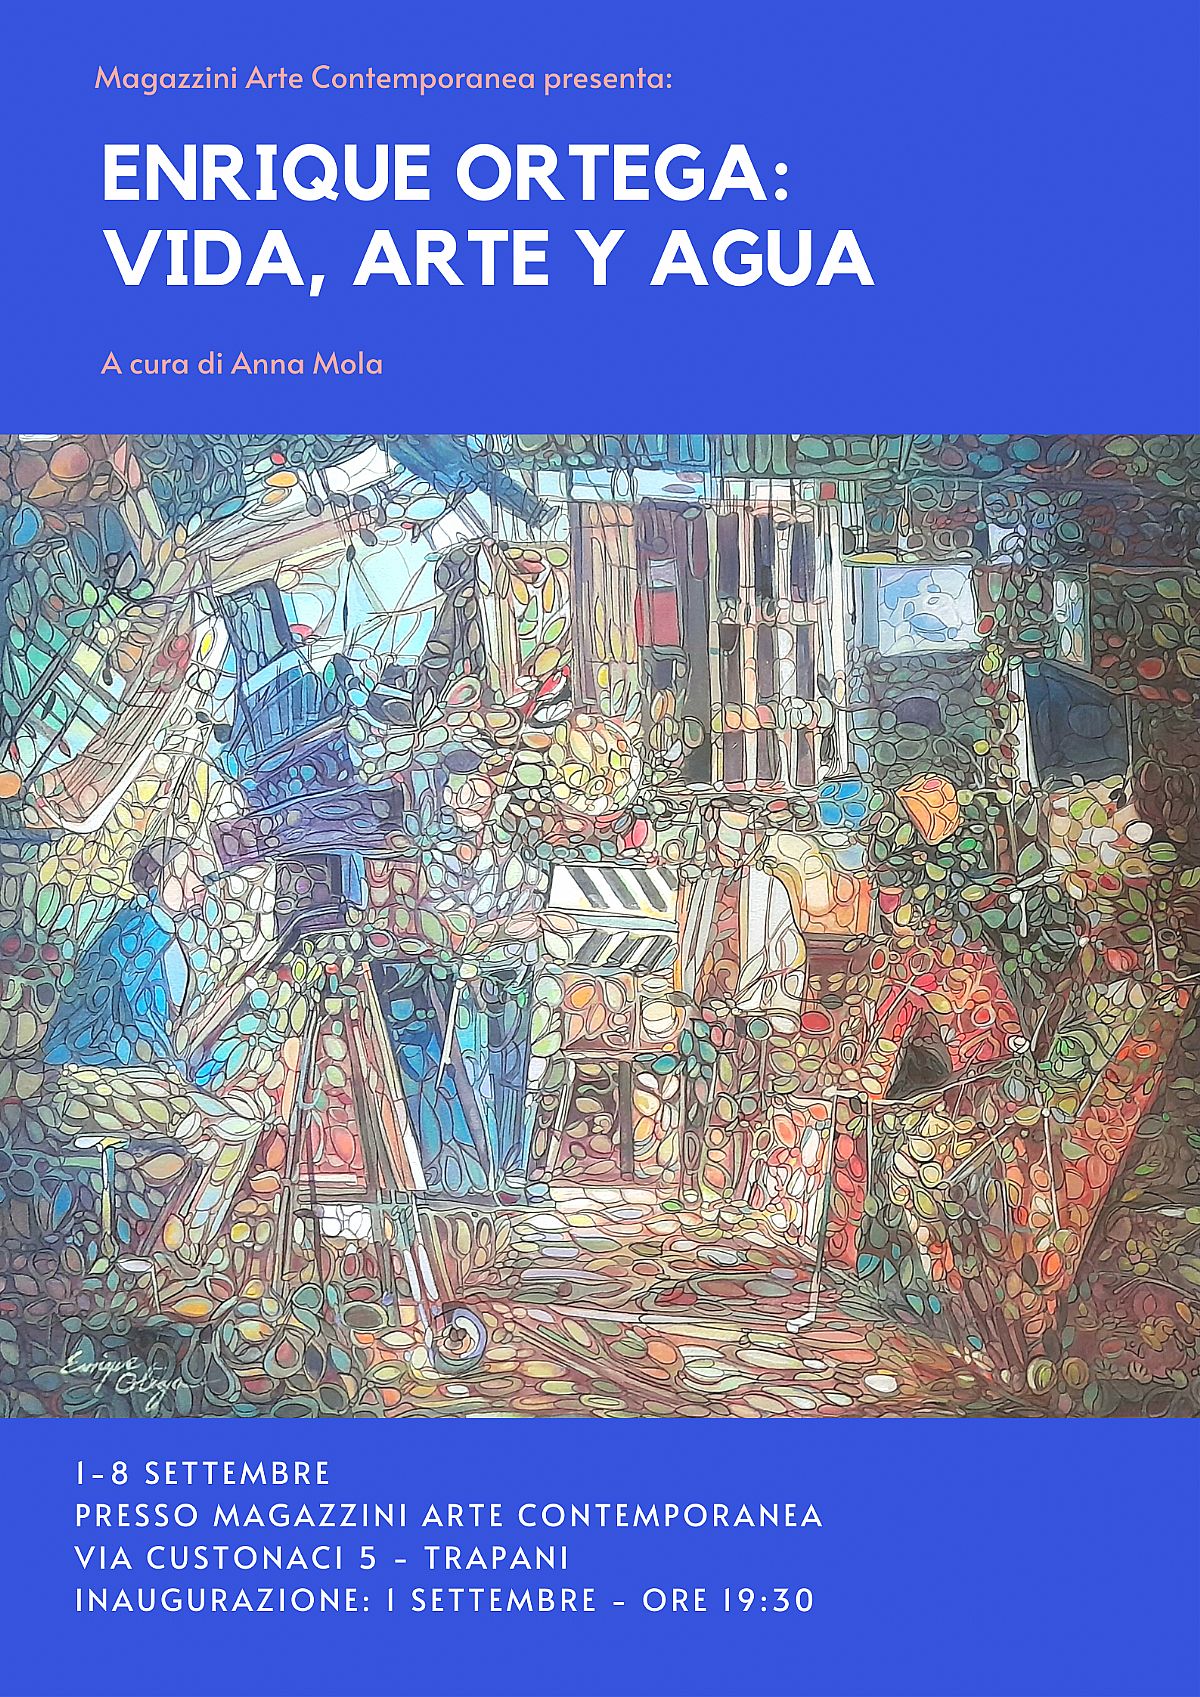 Enrique Ortega: Vida, Arte y Agua